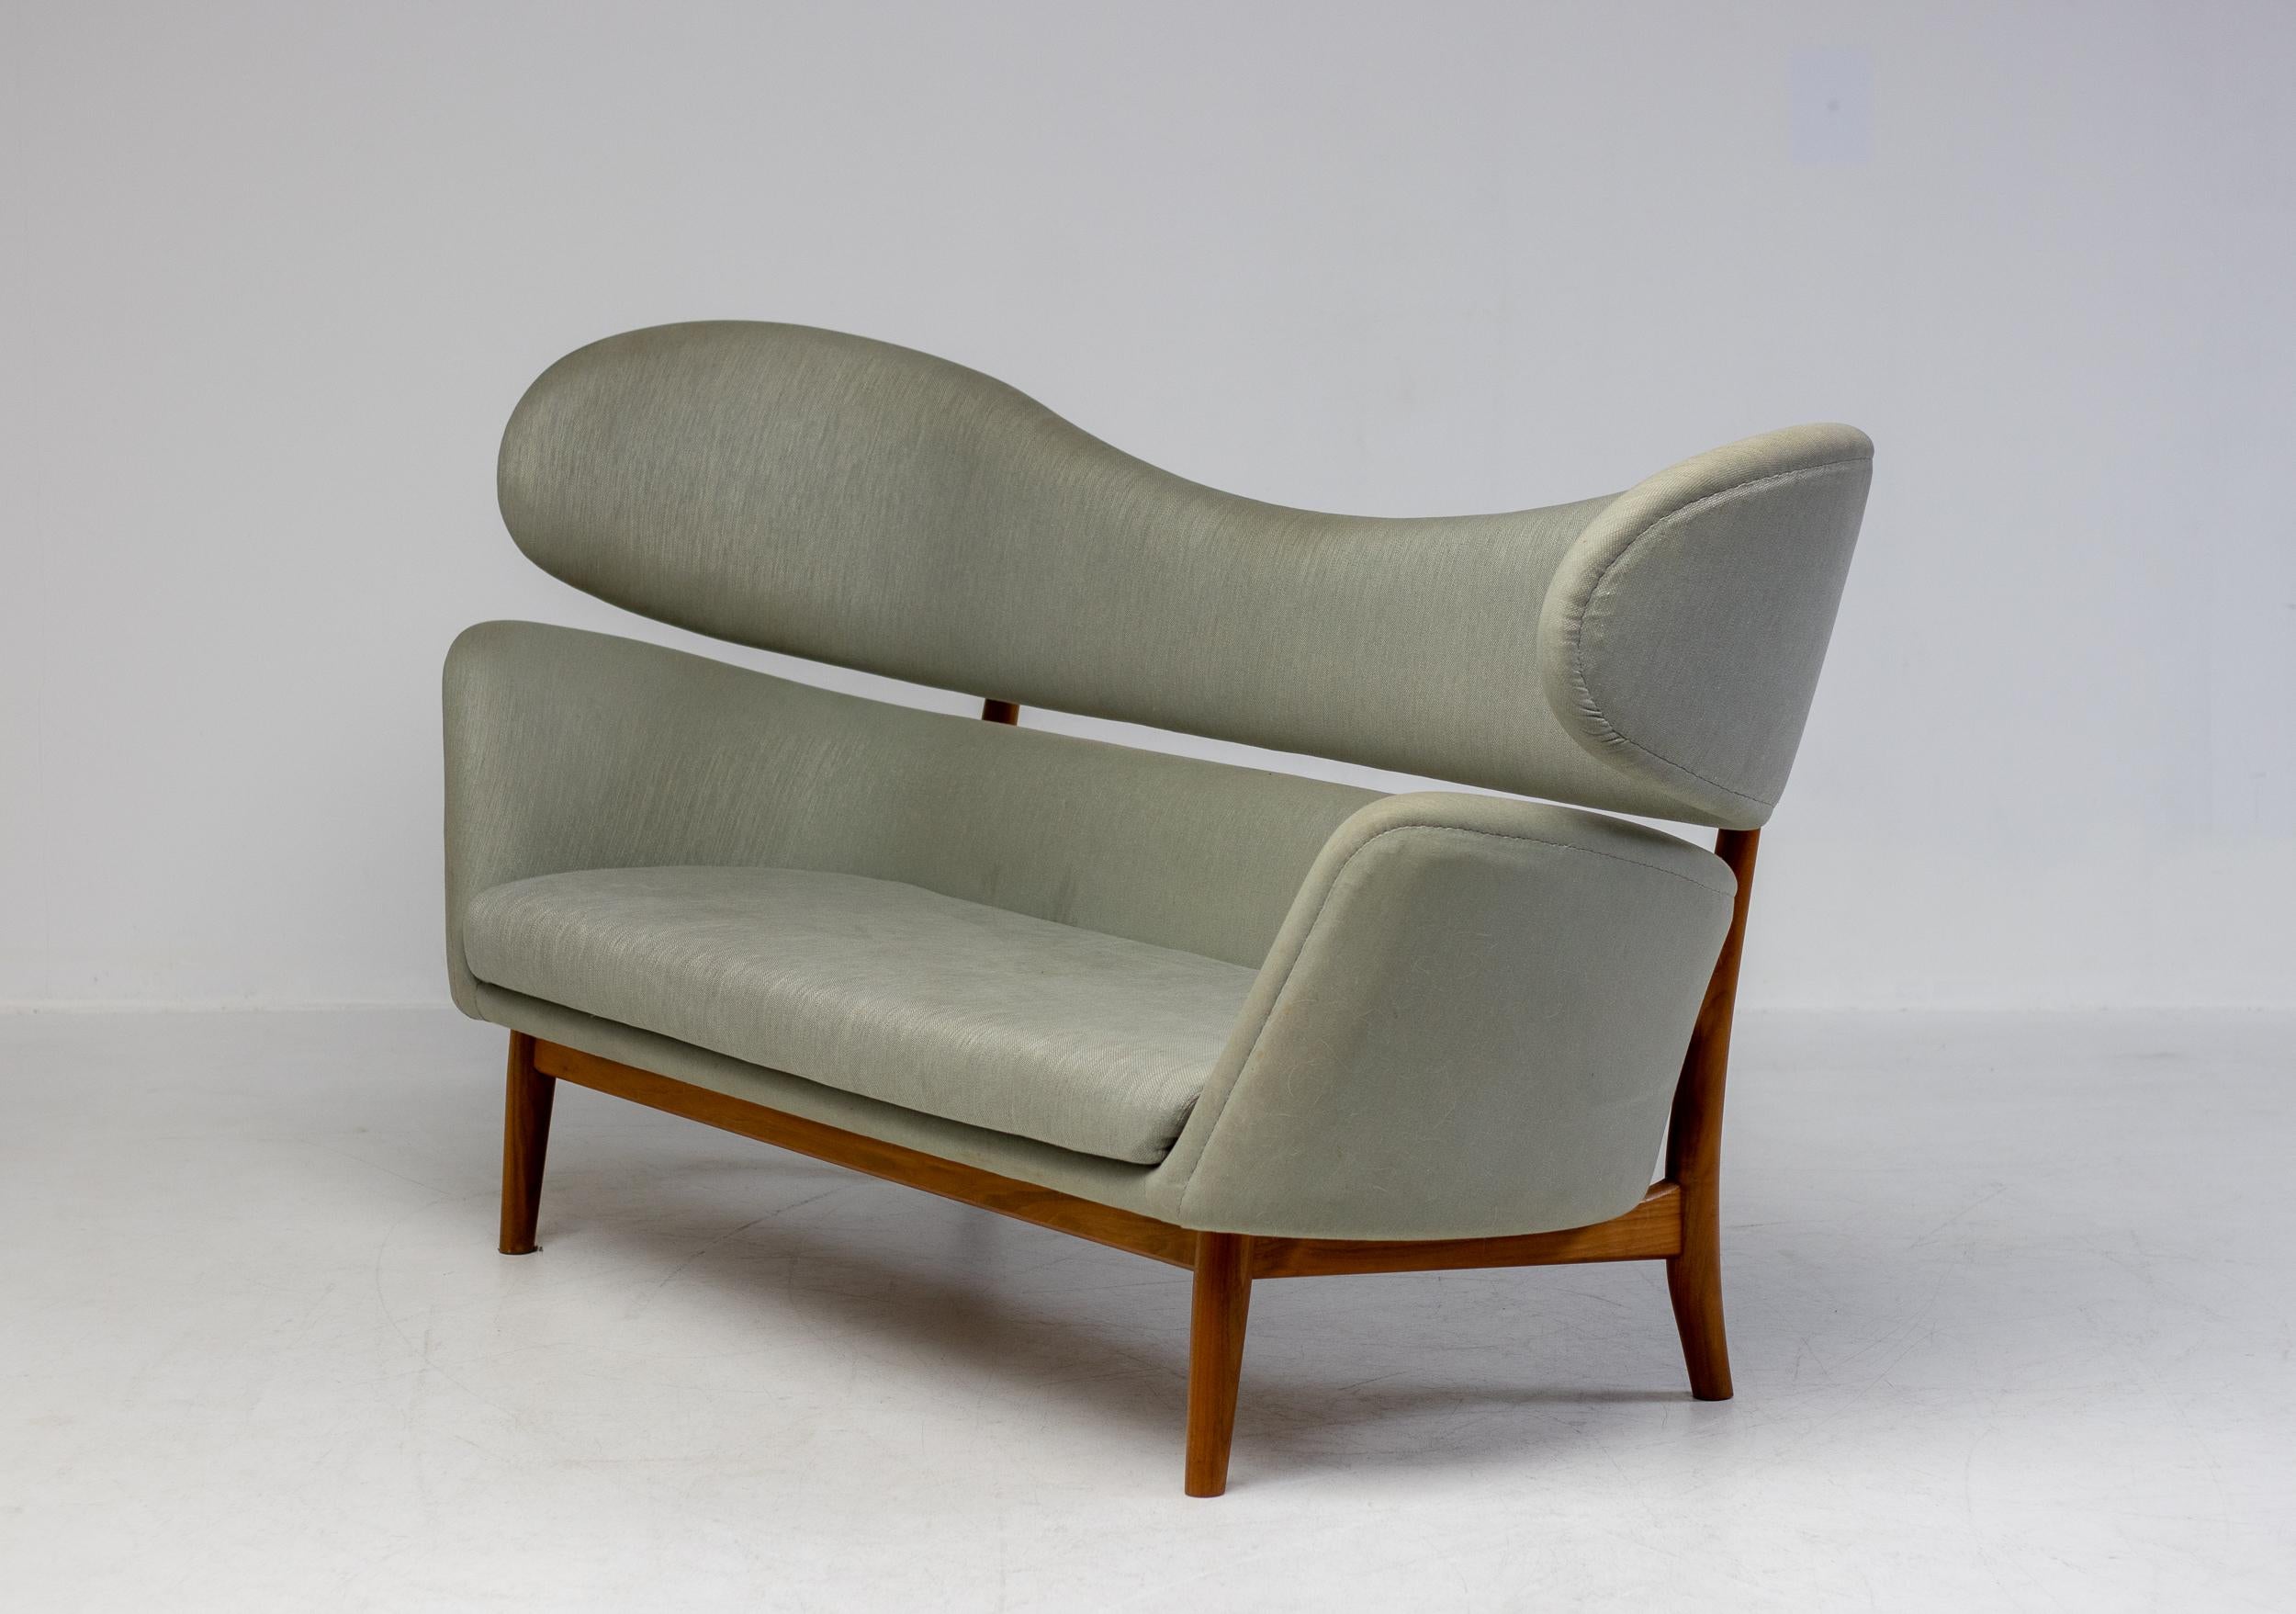 Ein seltenes und bedeutendes Sofa, entworfen von Finn Juhl 1951 für die Baker Furniture Company, Michigan. 
Edgar Kaufmann JR, ein Kunstsammler und Leiter der Abteilung für Industriedesign am Museum of Modern Art in New York, stellte sie der